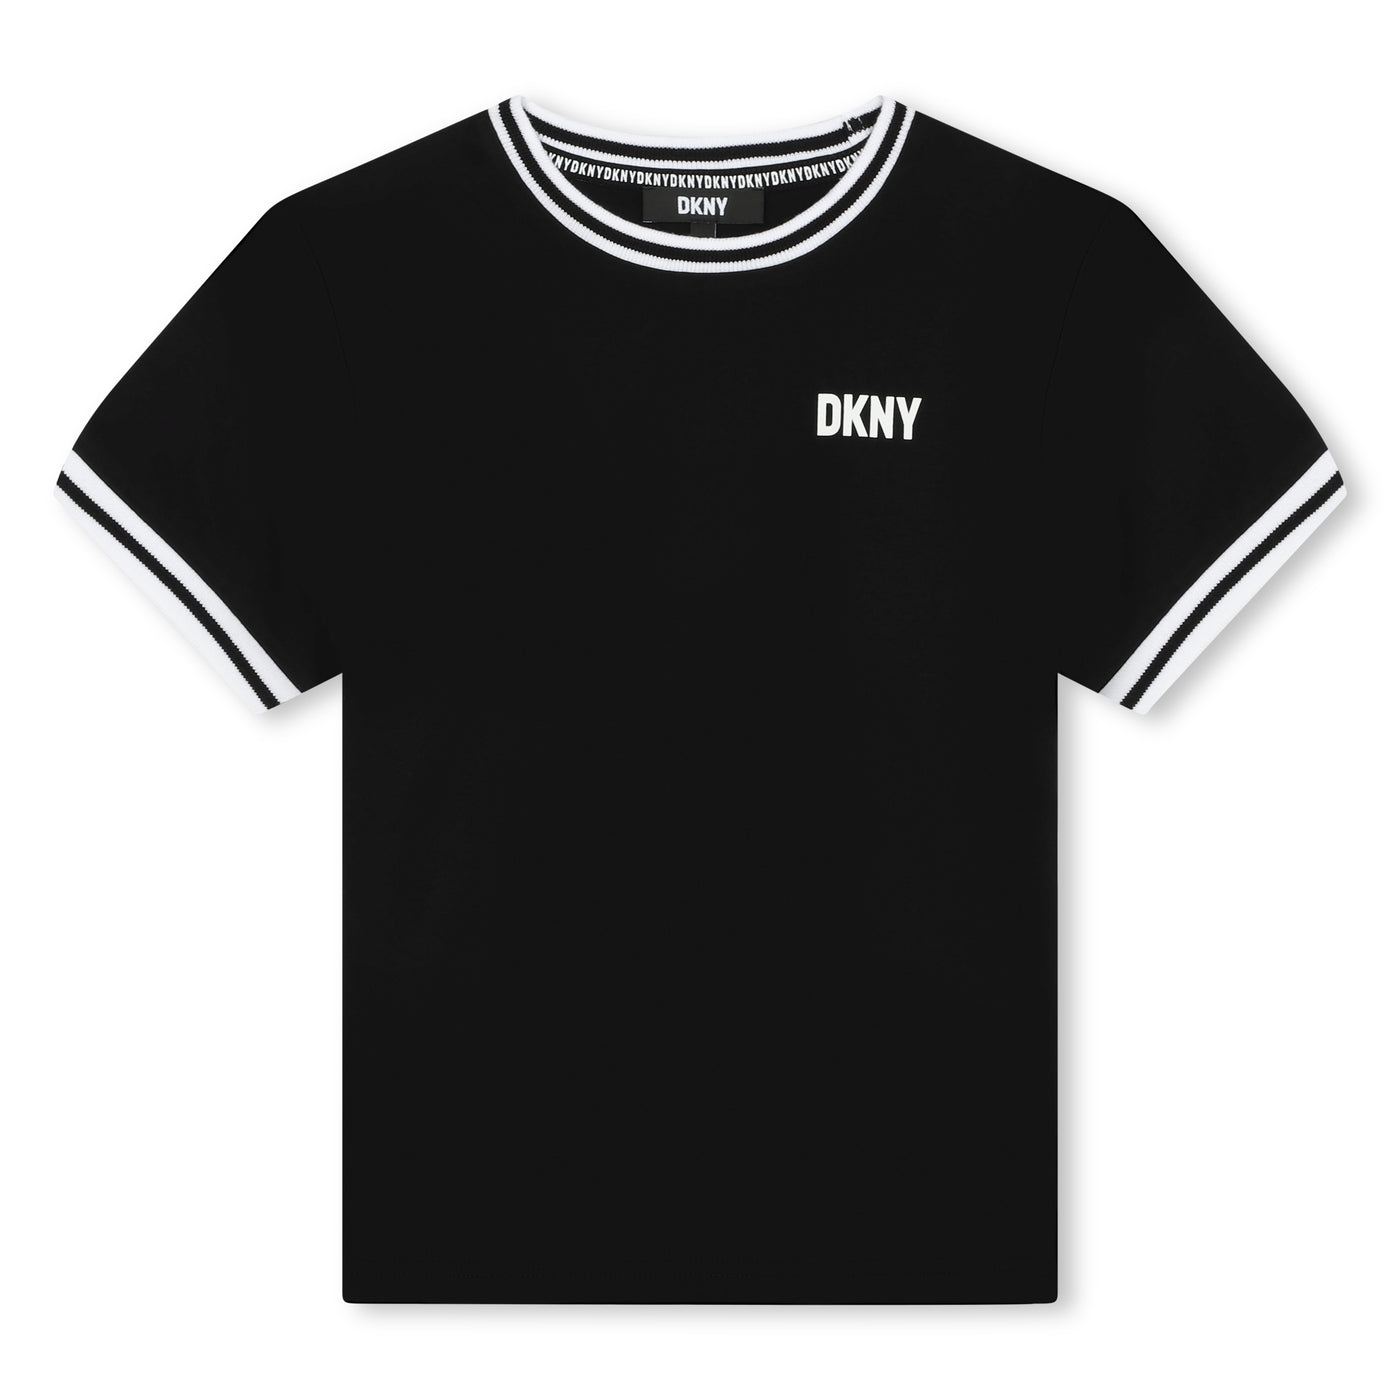 Black T-shirt by DKNY